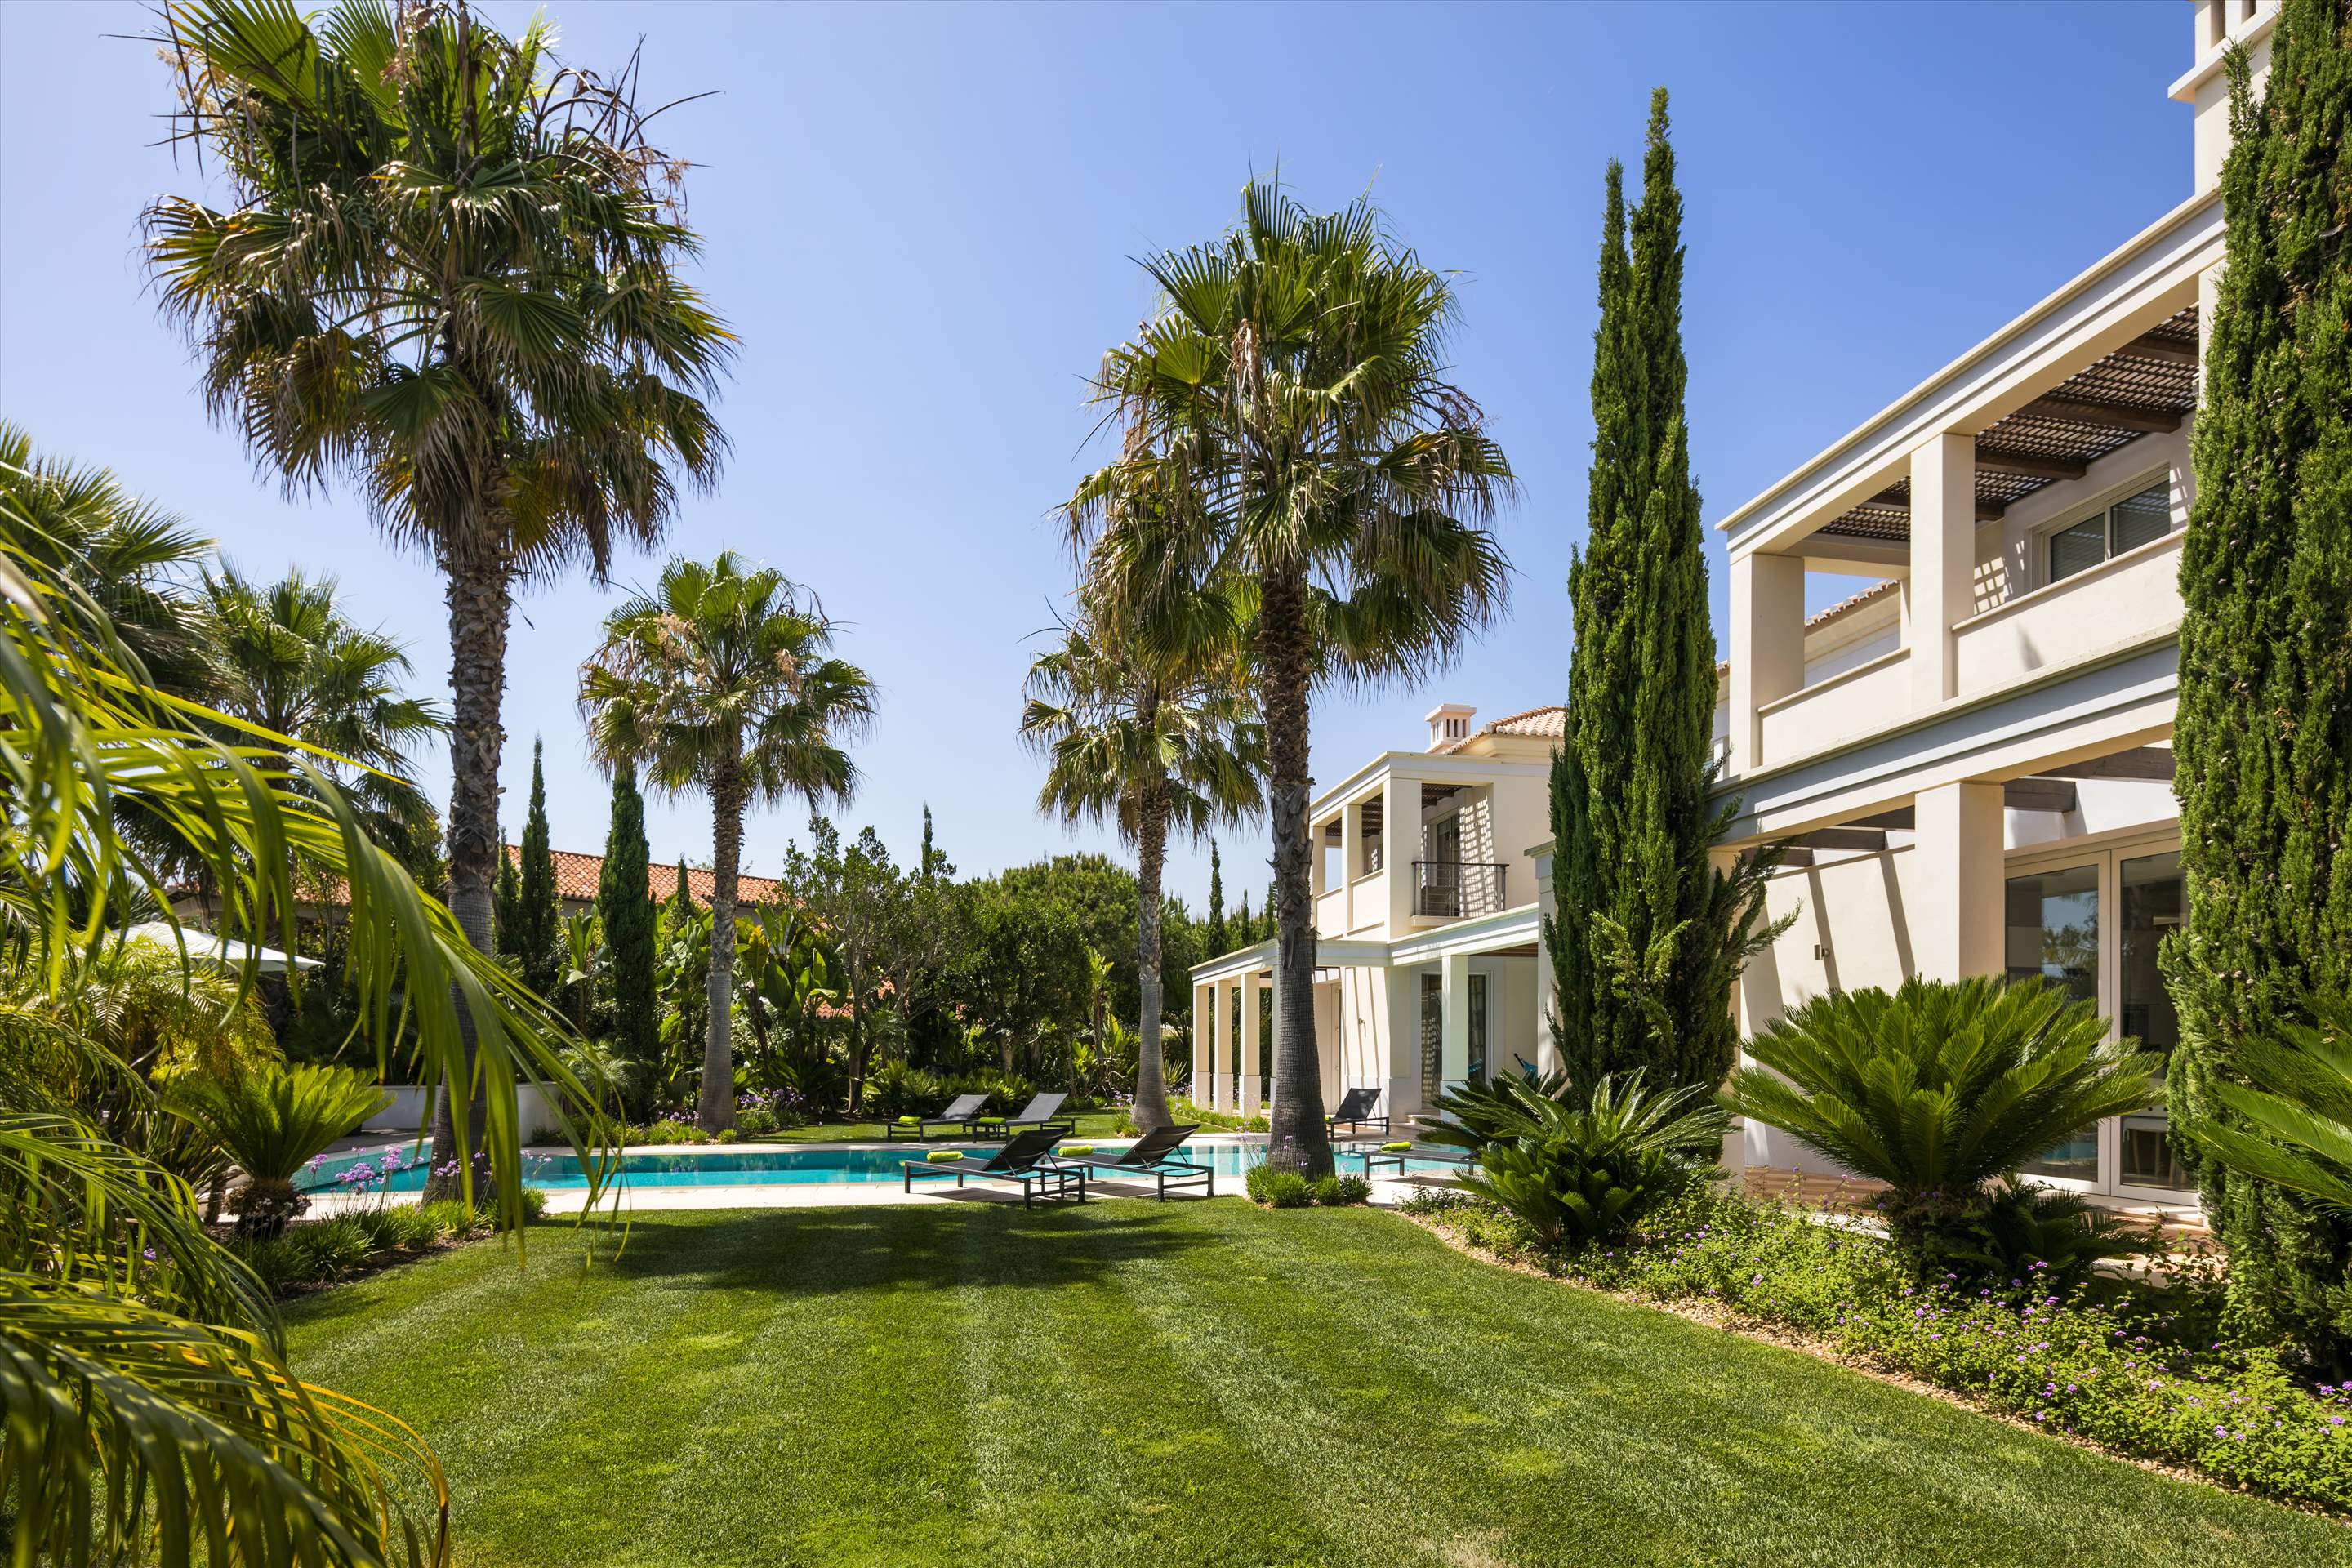 Villa Majestosa, 6 Bedrooms, 6 bedroom villa in Quinta do Lago, Algarve Photo #14